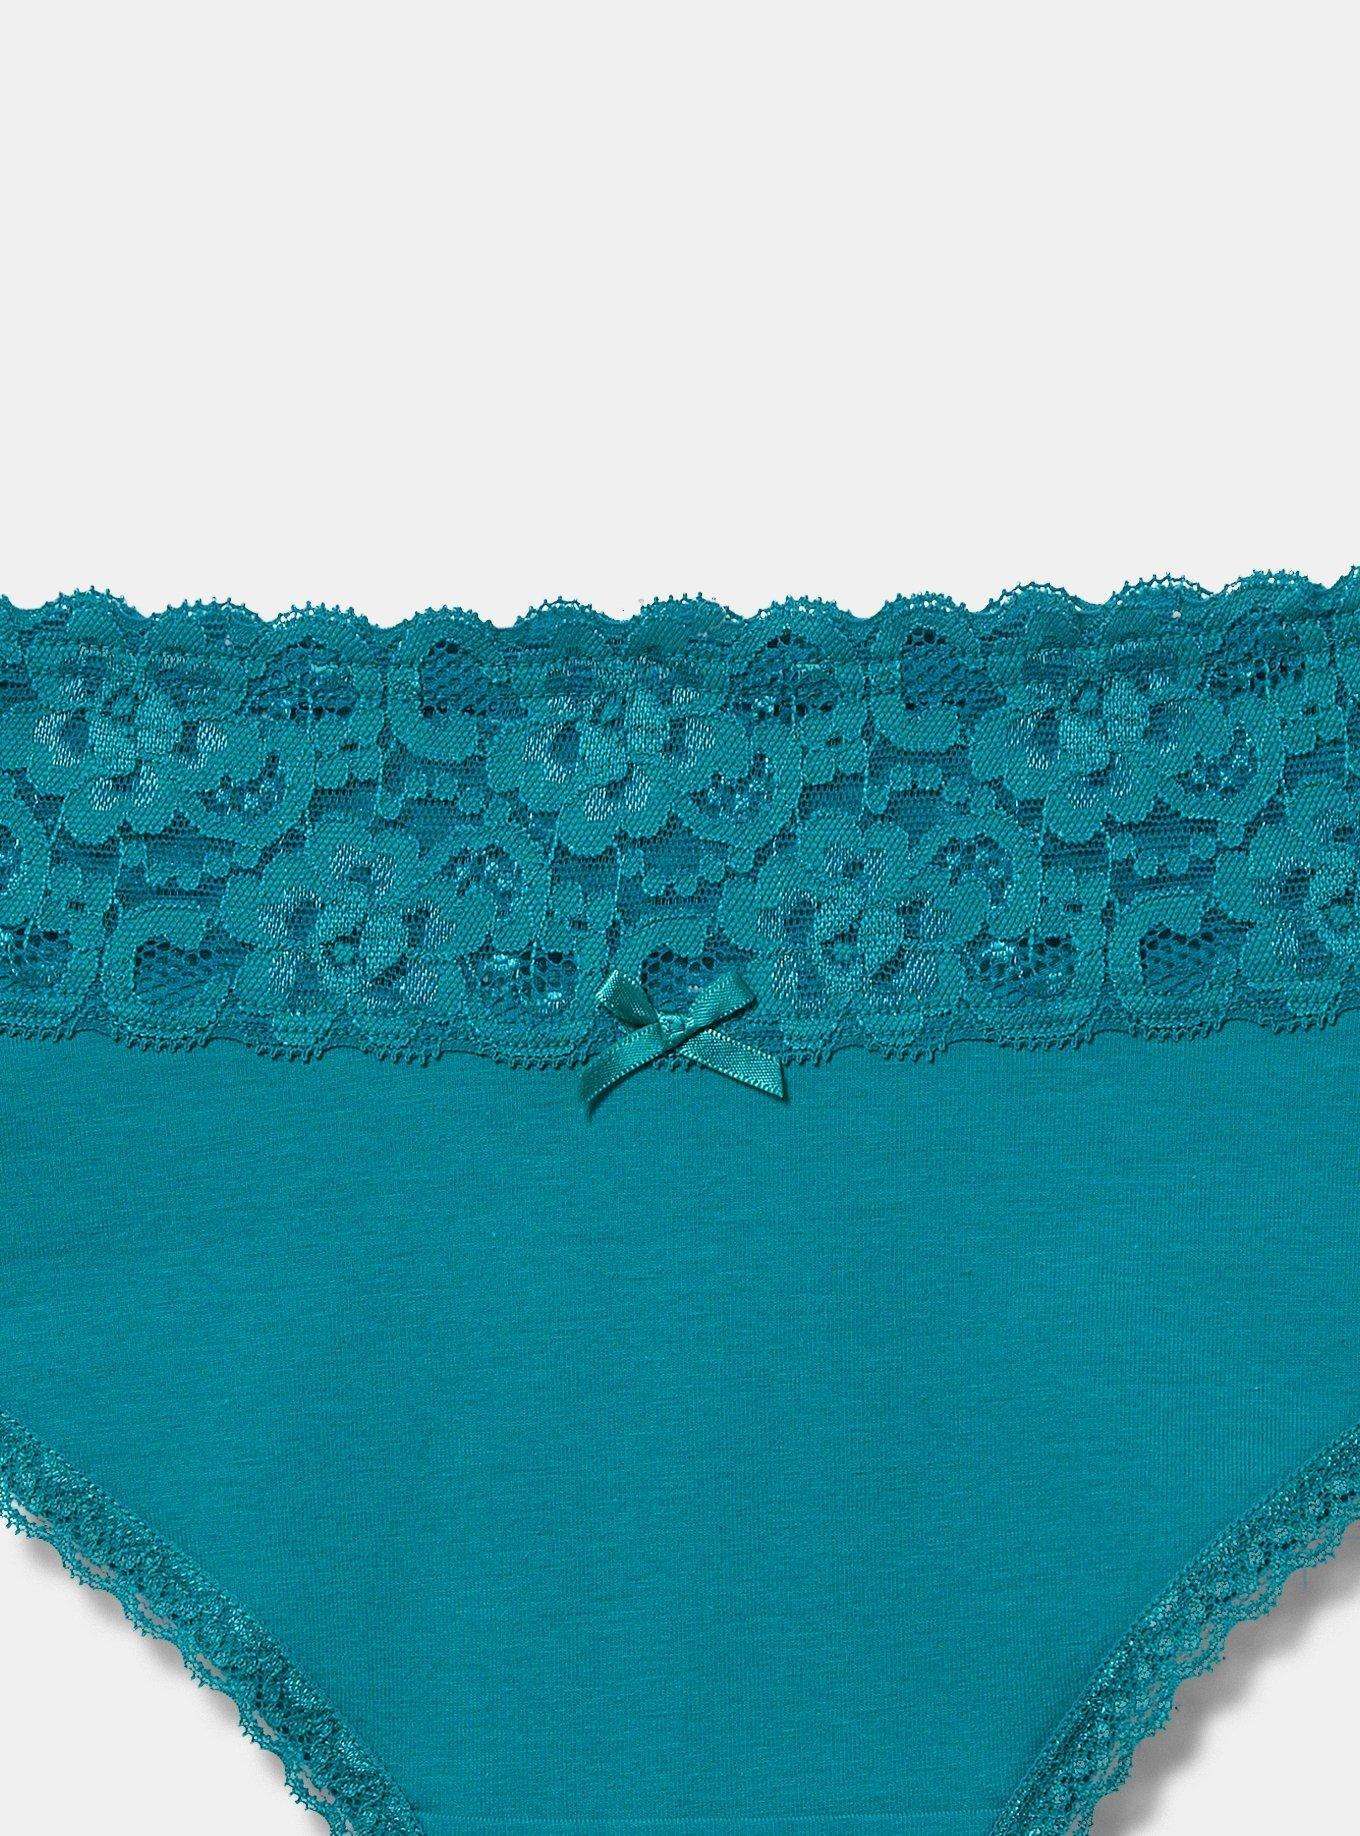 Plus Size - Cotton Mid-Rise Thong Lace Trim Panty - Torrid